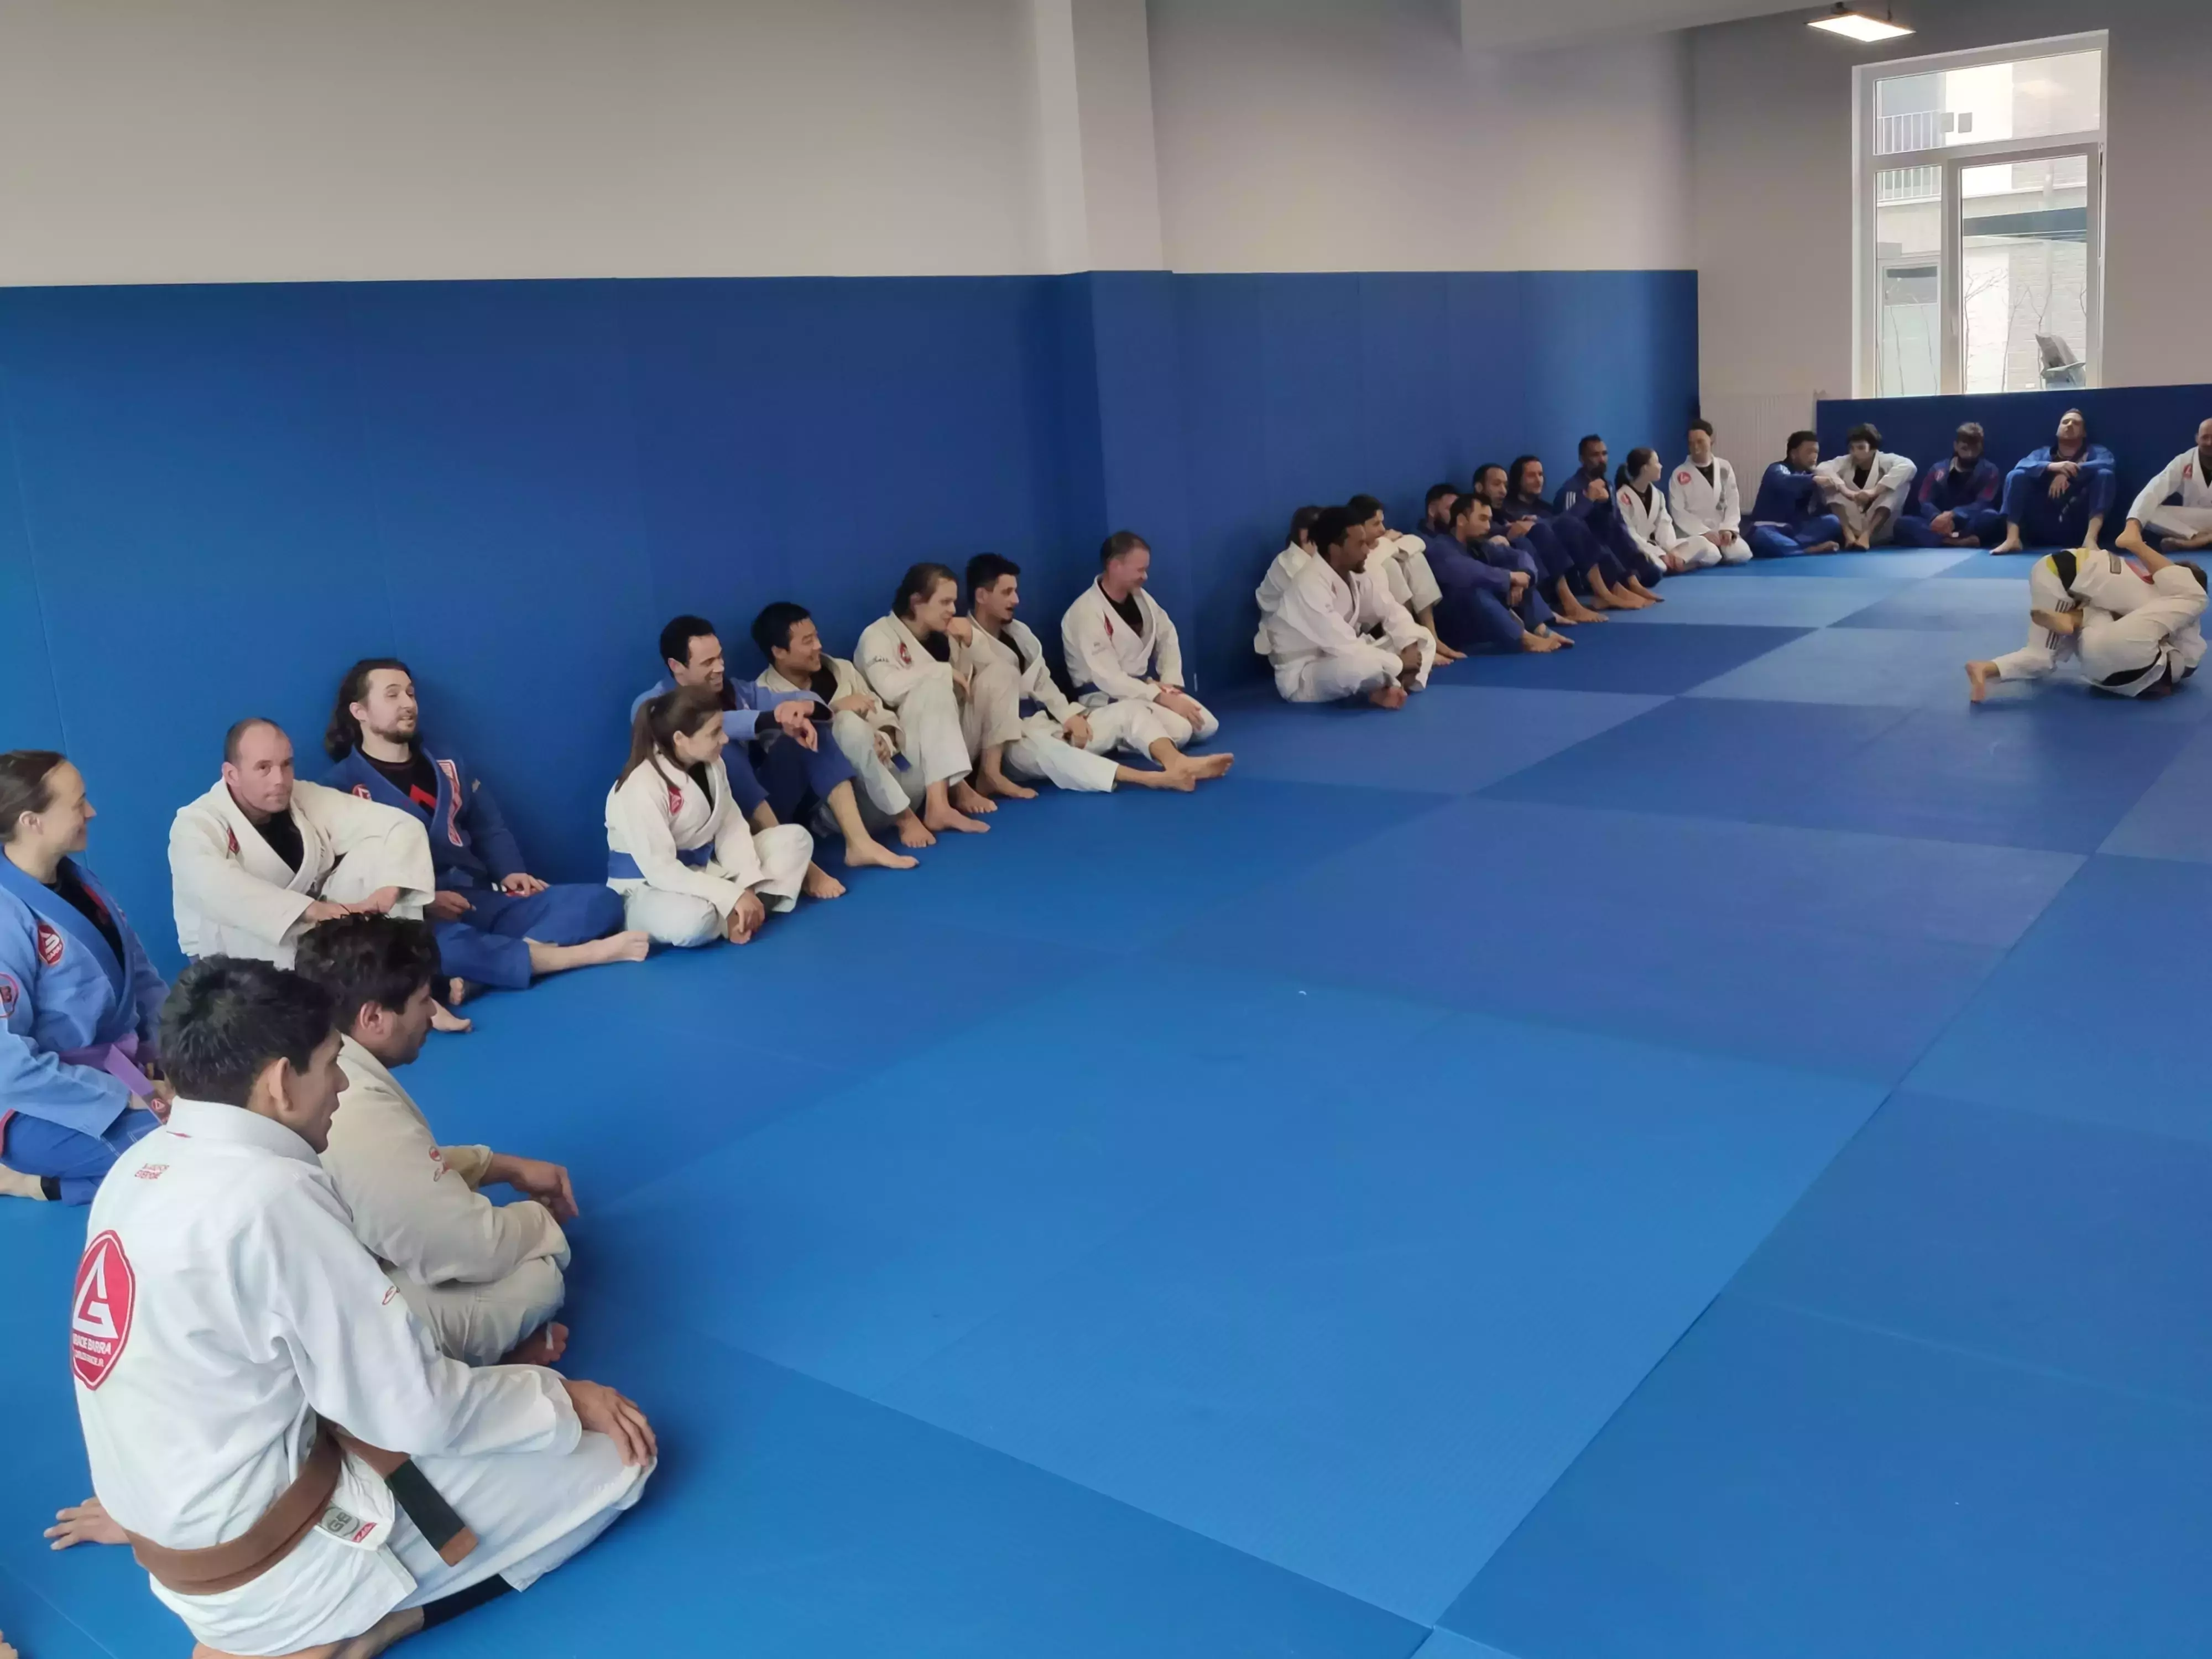 Brazilian Jiu-Jitsu training session